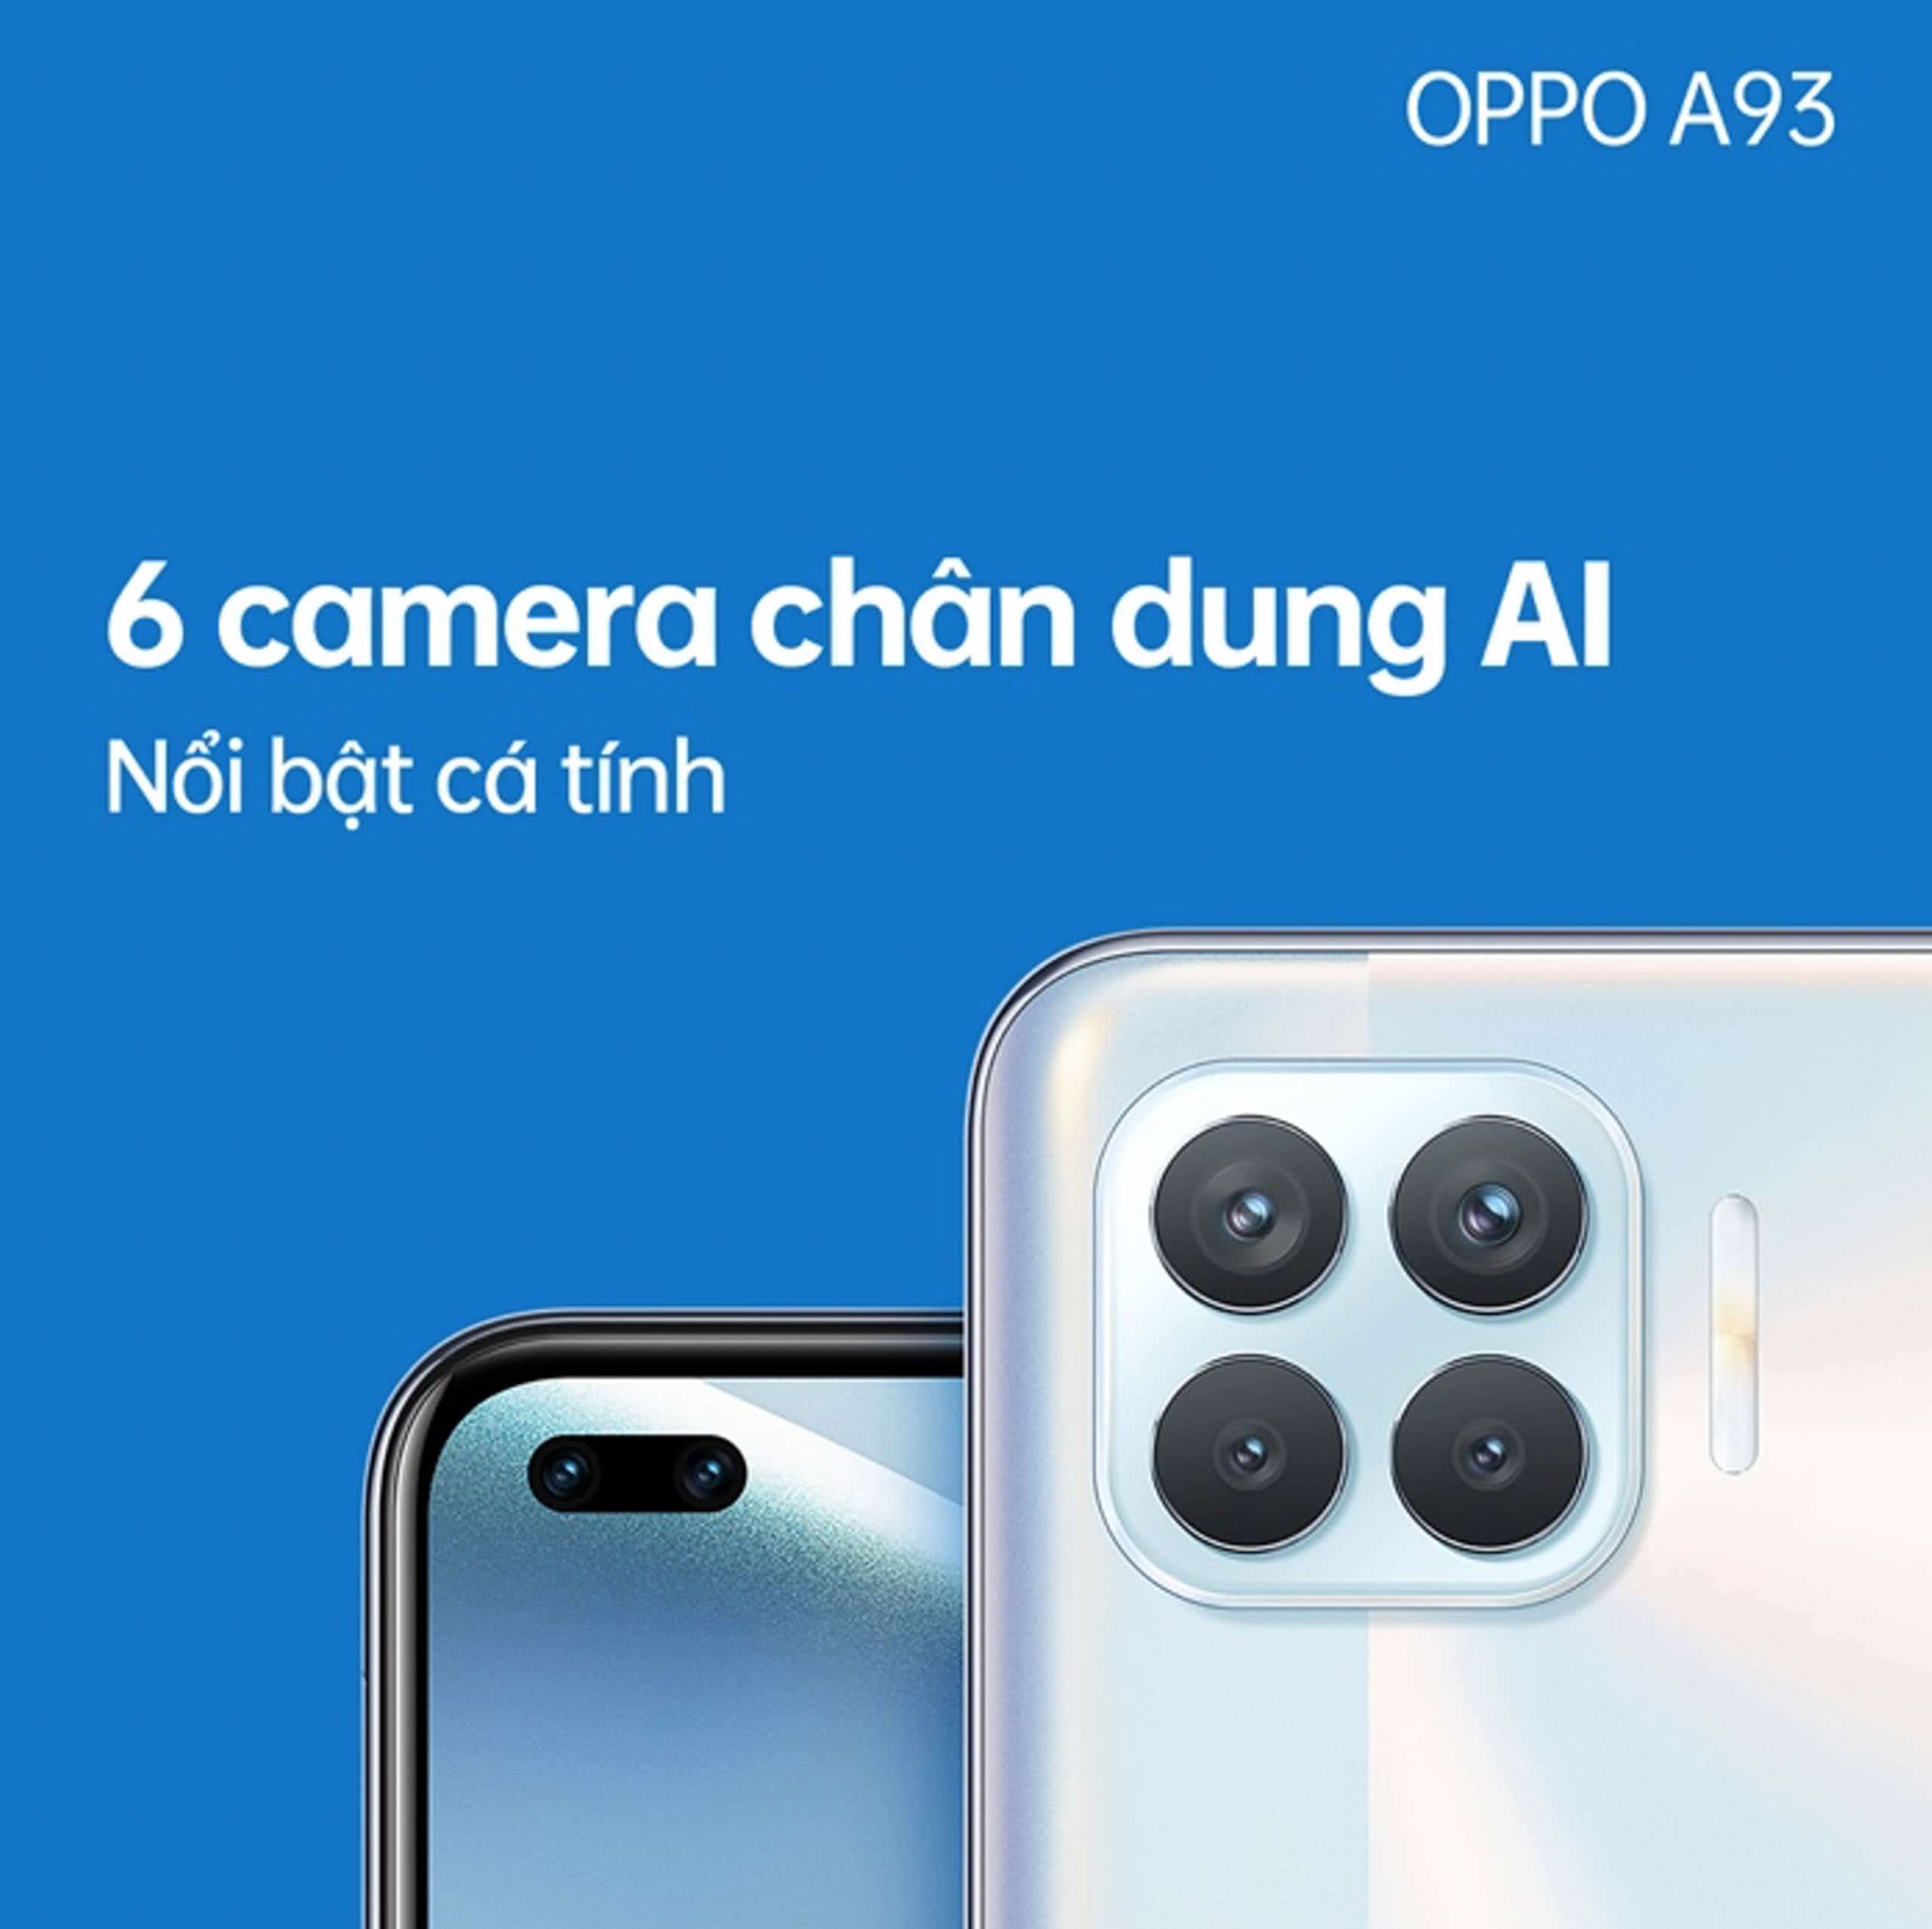 OPPO A93 chính thức lên kệ tại Việt Nam: Công nghệ chụp ảnh chân dung AI, thiết kế mỏng nhẹ cực đẹp cùng hiệu năng ấn tượng